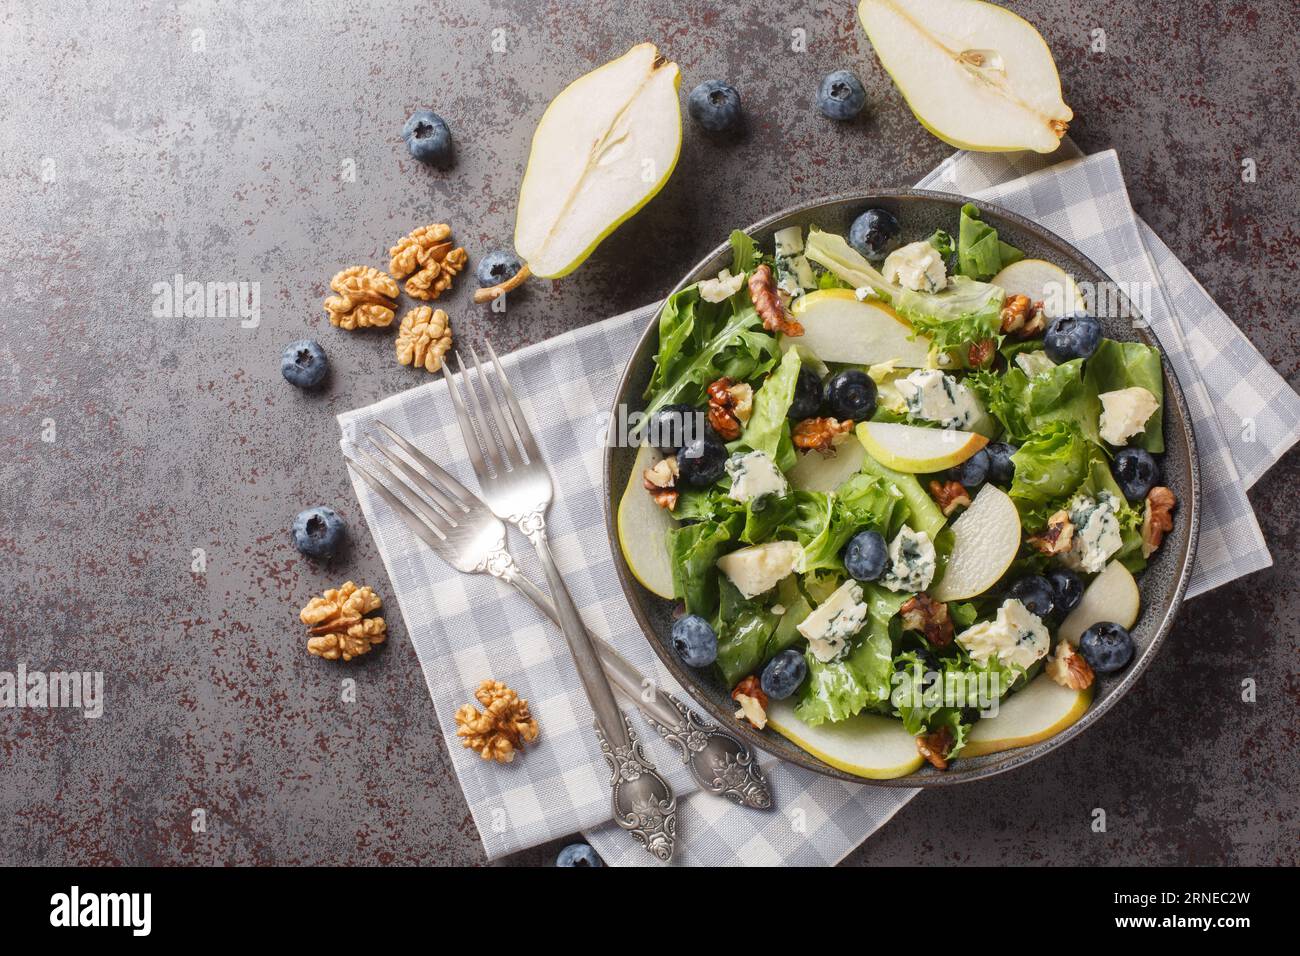 Bleuets, poire, salade de légumes-feuilles avec noix et fromage bleu en gros plan dans une assiette sur la table. vue de dessus horizontale Banque D'Images